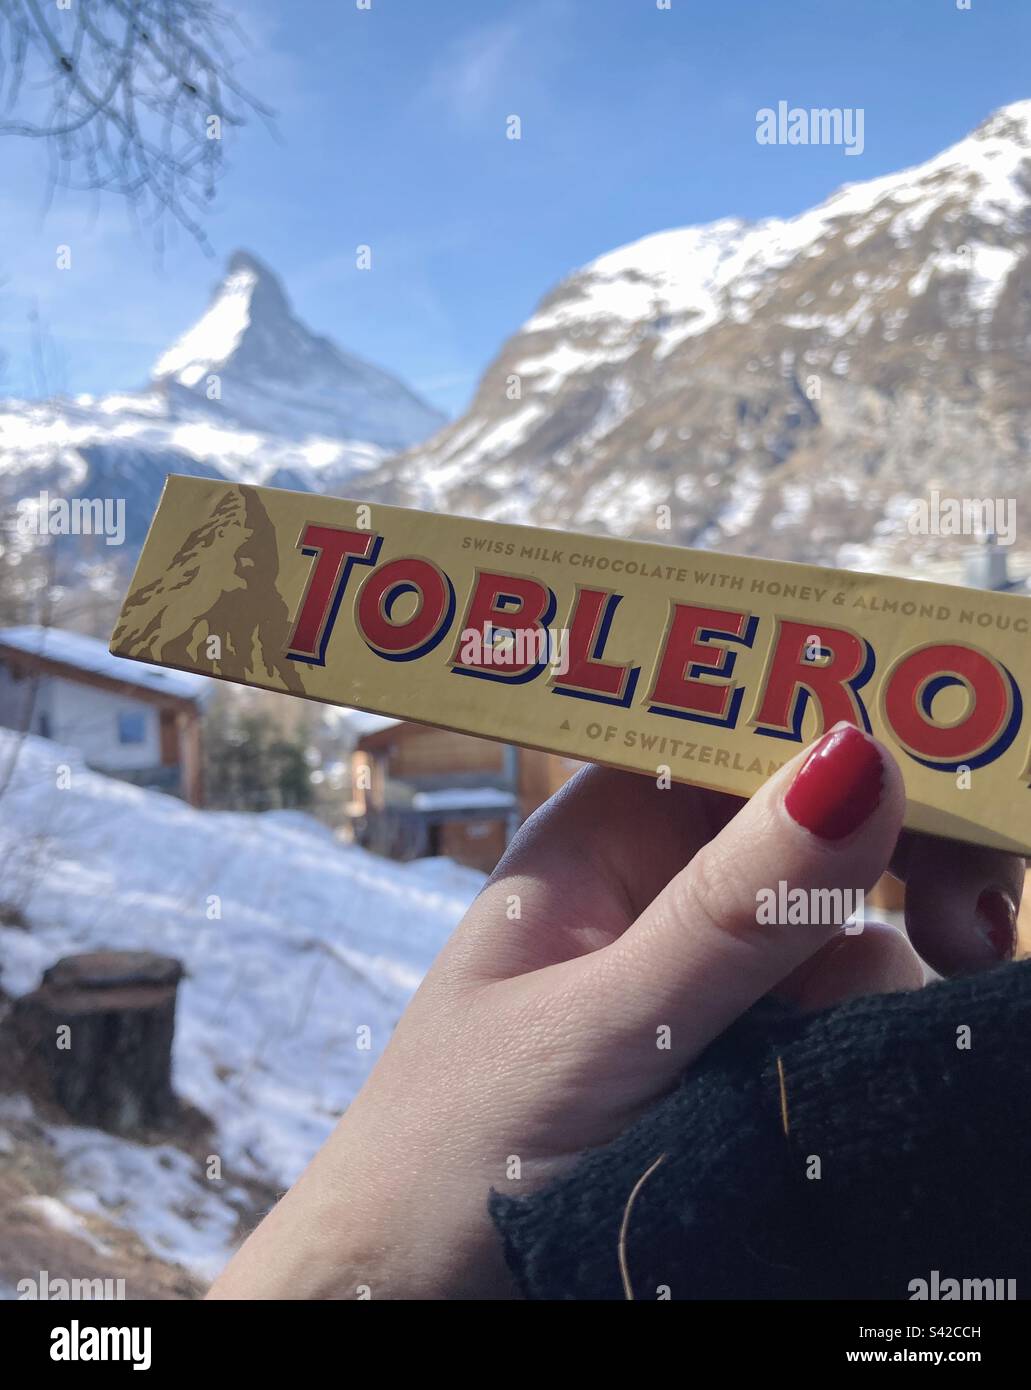 La barra Toblerone è tenuta davanti al monte Cervino, che appare sulla confezione. Foto Stock